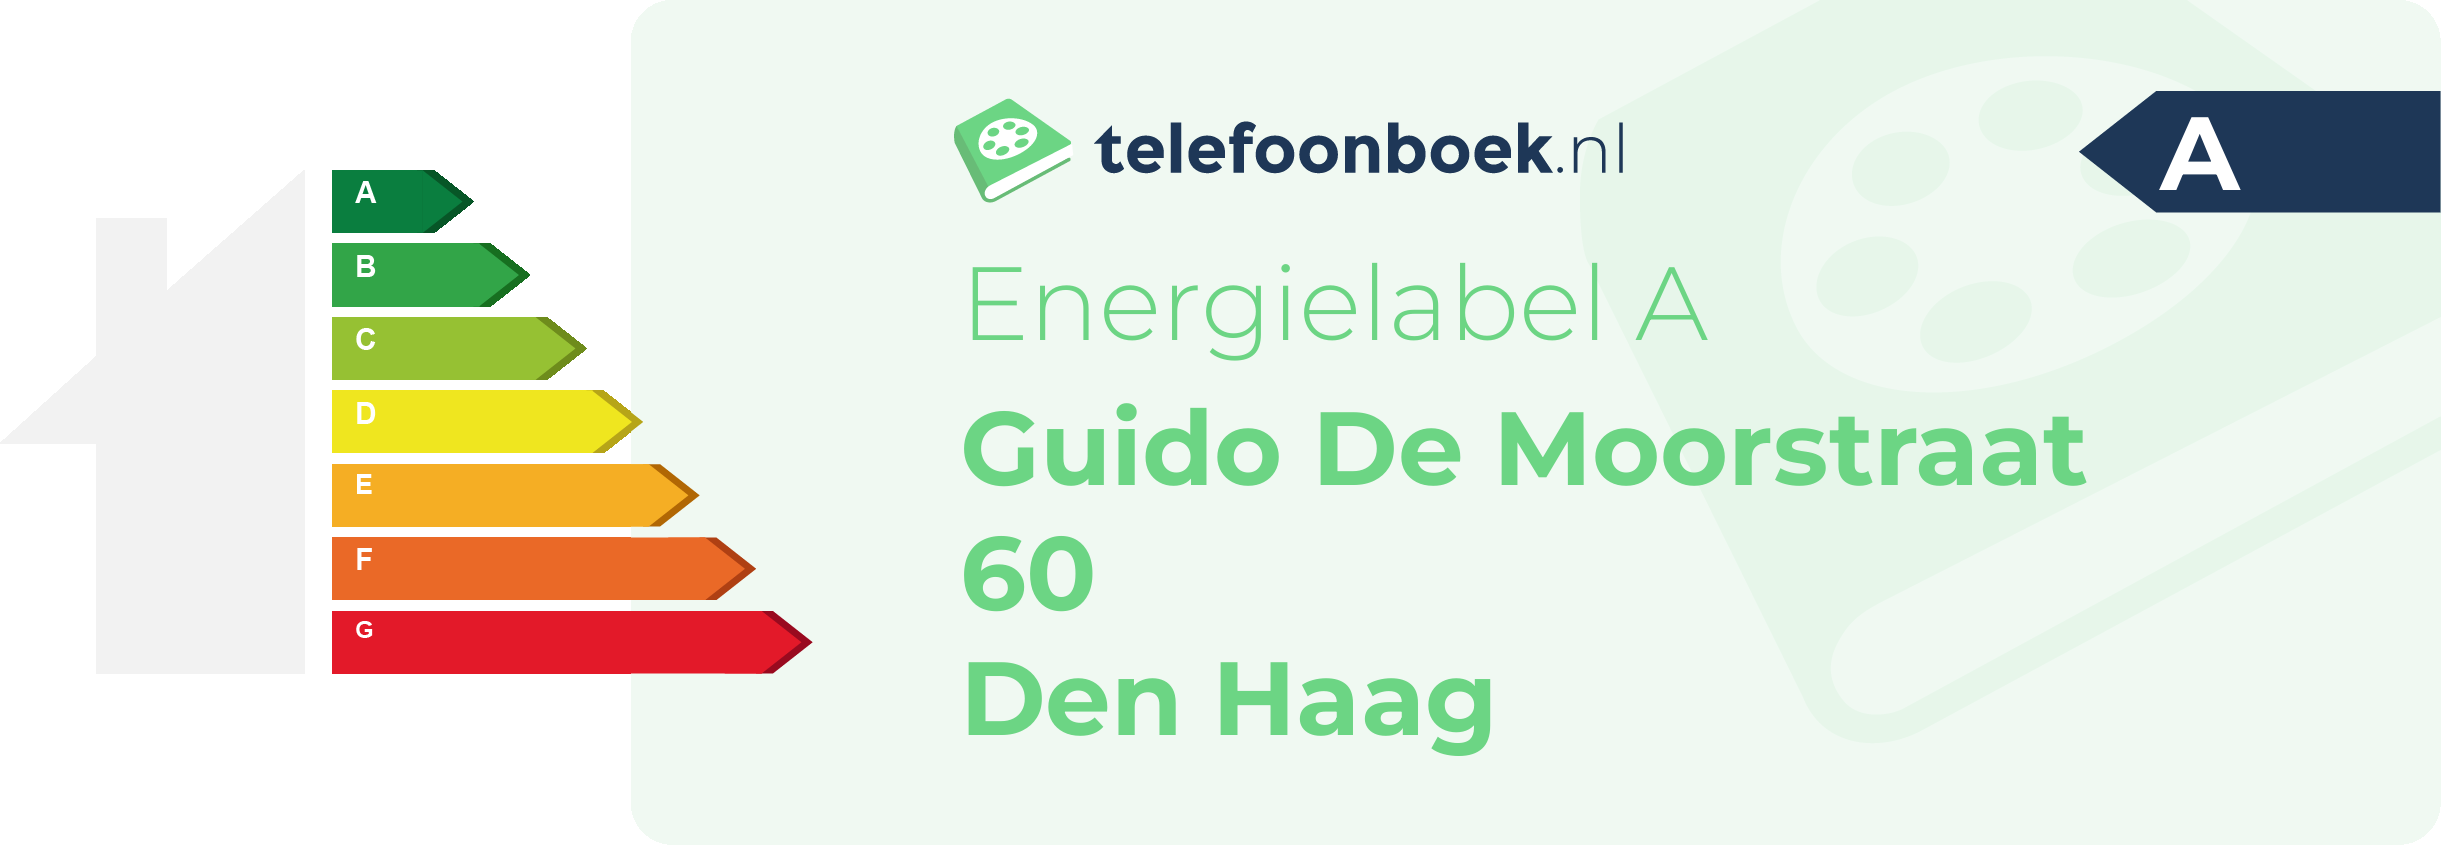 Energielabel Guido De Moorstraat 60 Den Haag